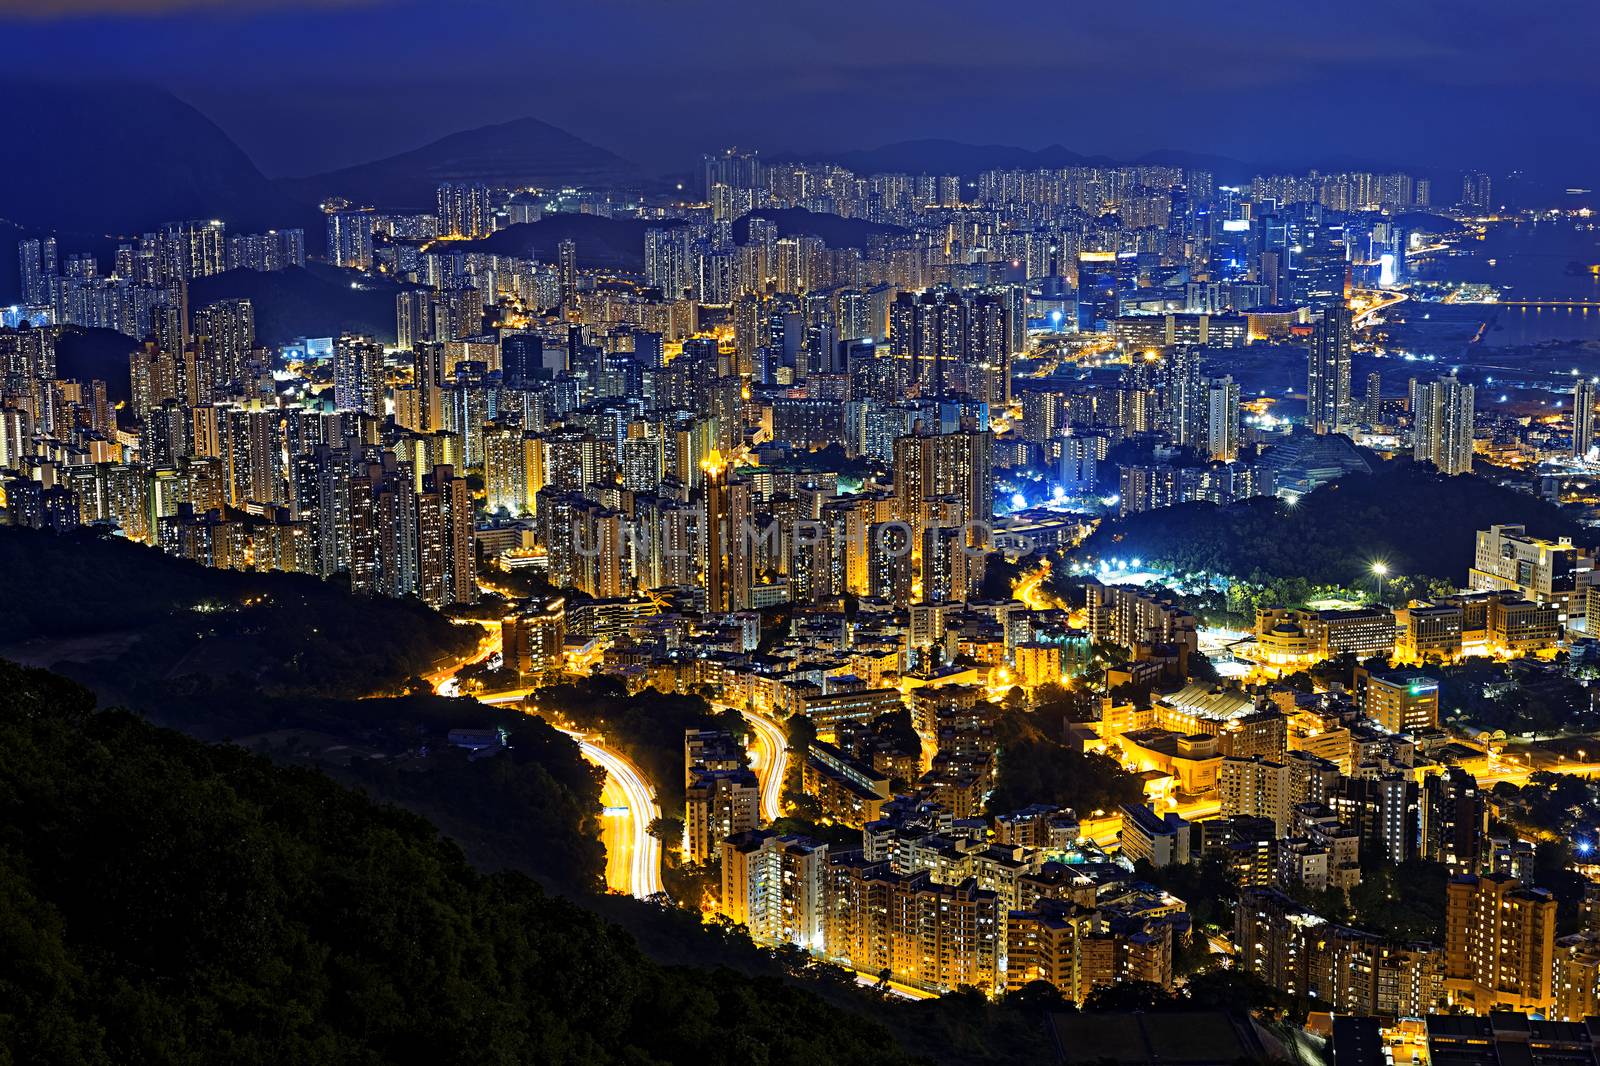 Hong Kong Modern City at night